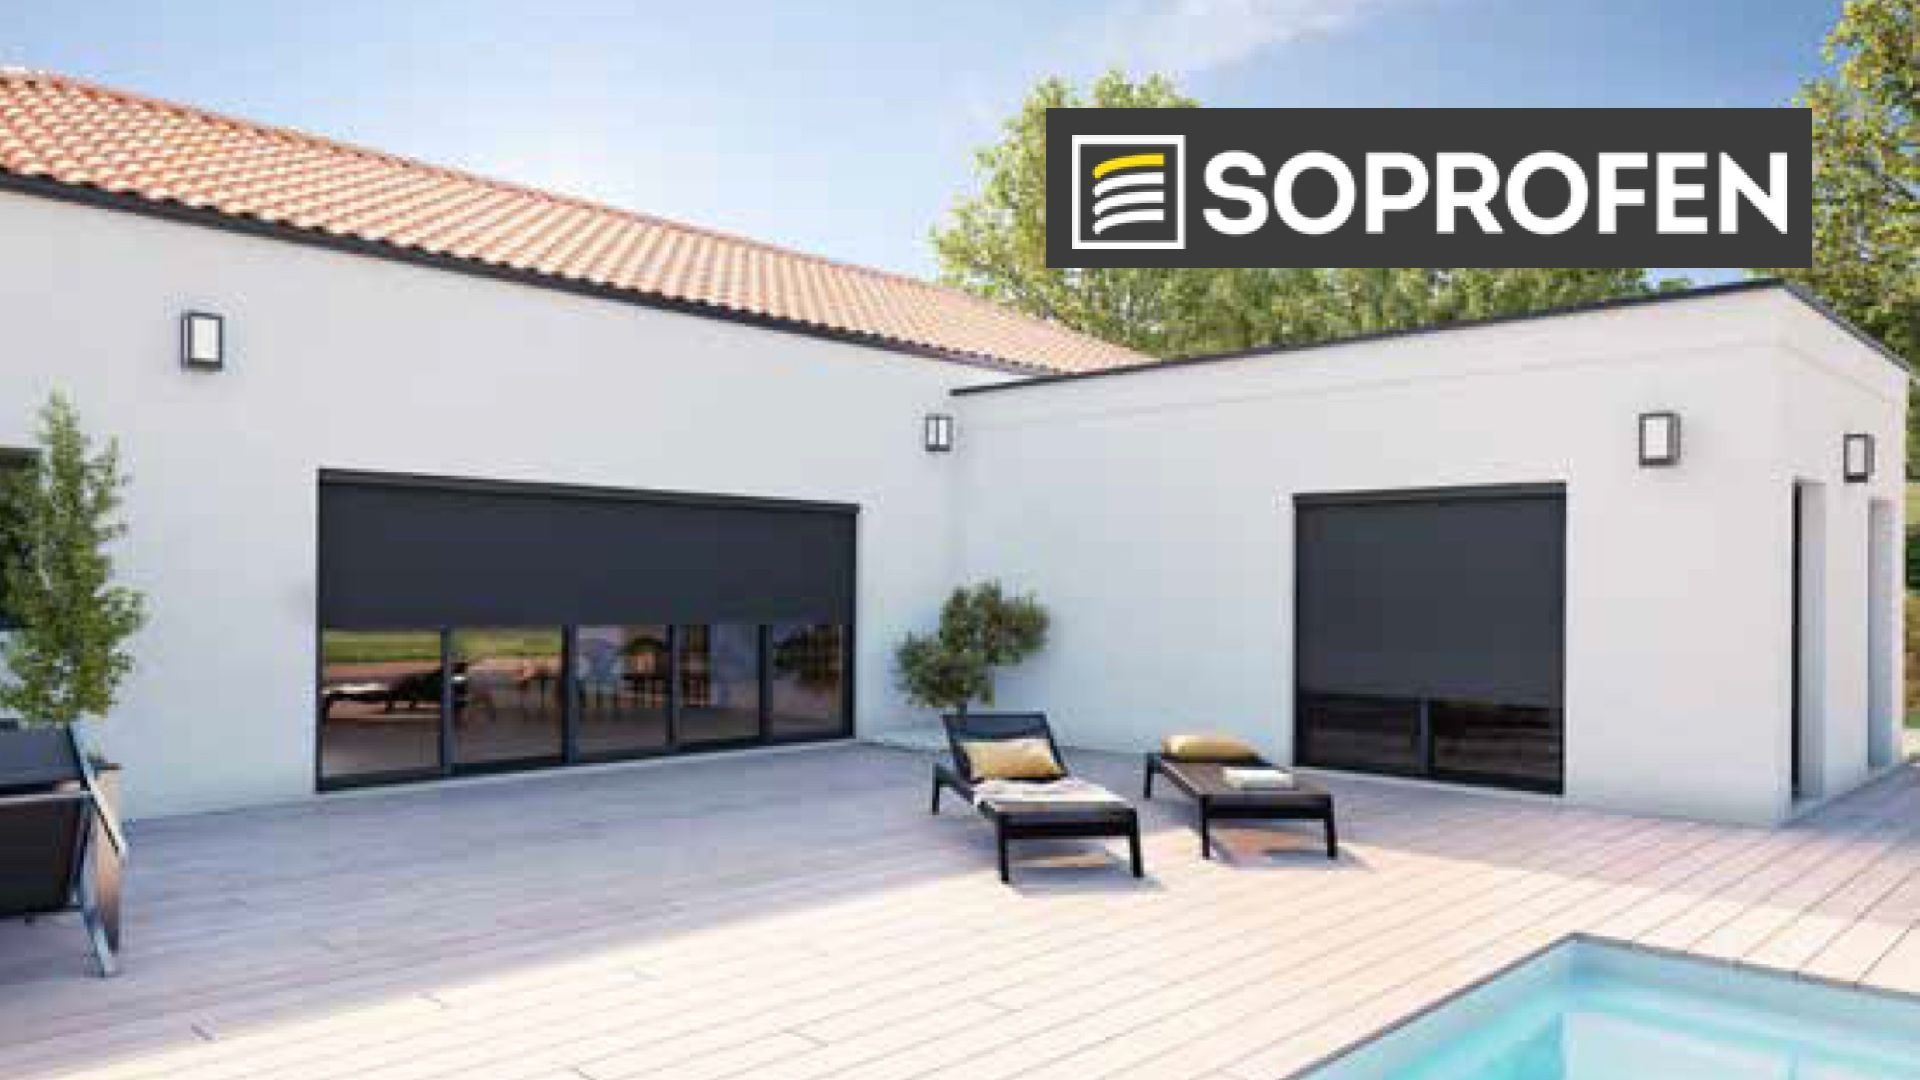 Avec son nouveau zip-screen ultra compact et extra large , SOPRFEN révolutionne le marché de la protection solaire